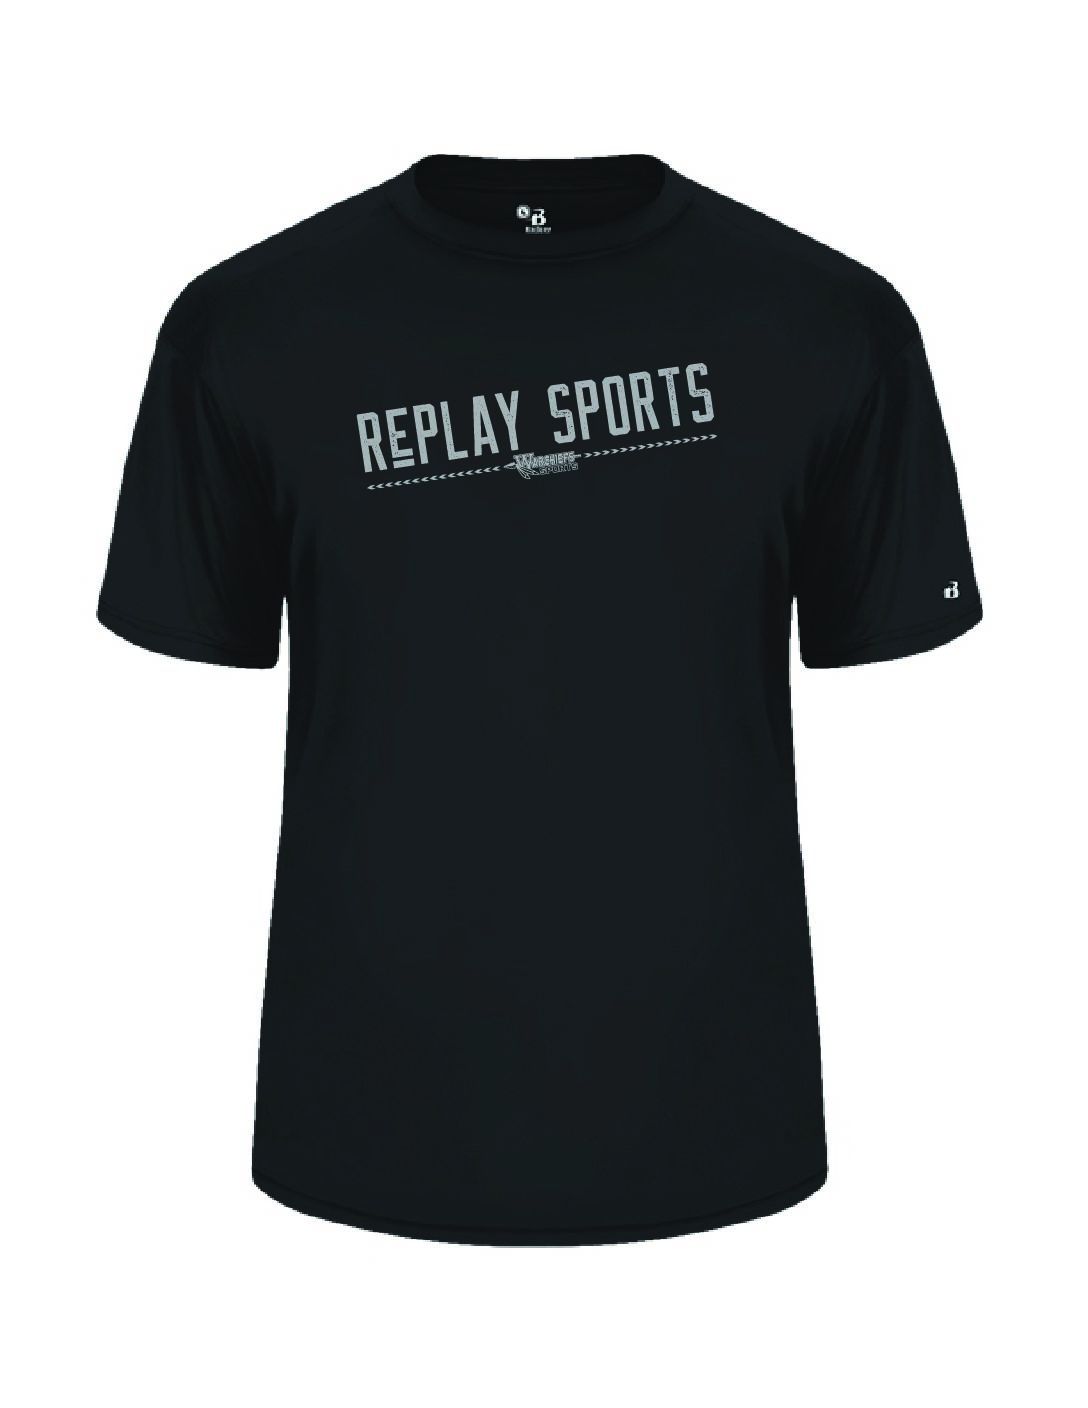 Replay Shirt Fit Dri Sports Warchiefs - Sports